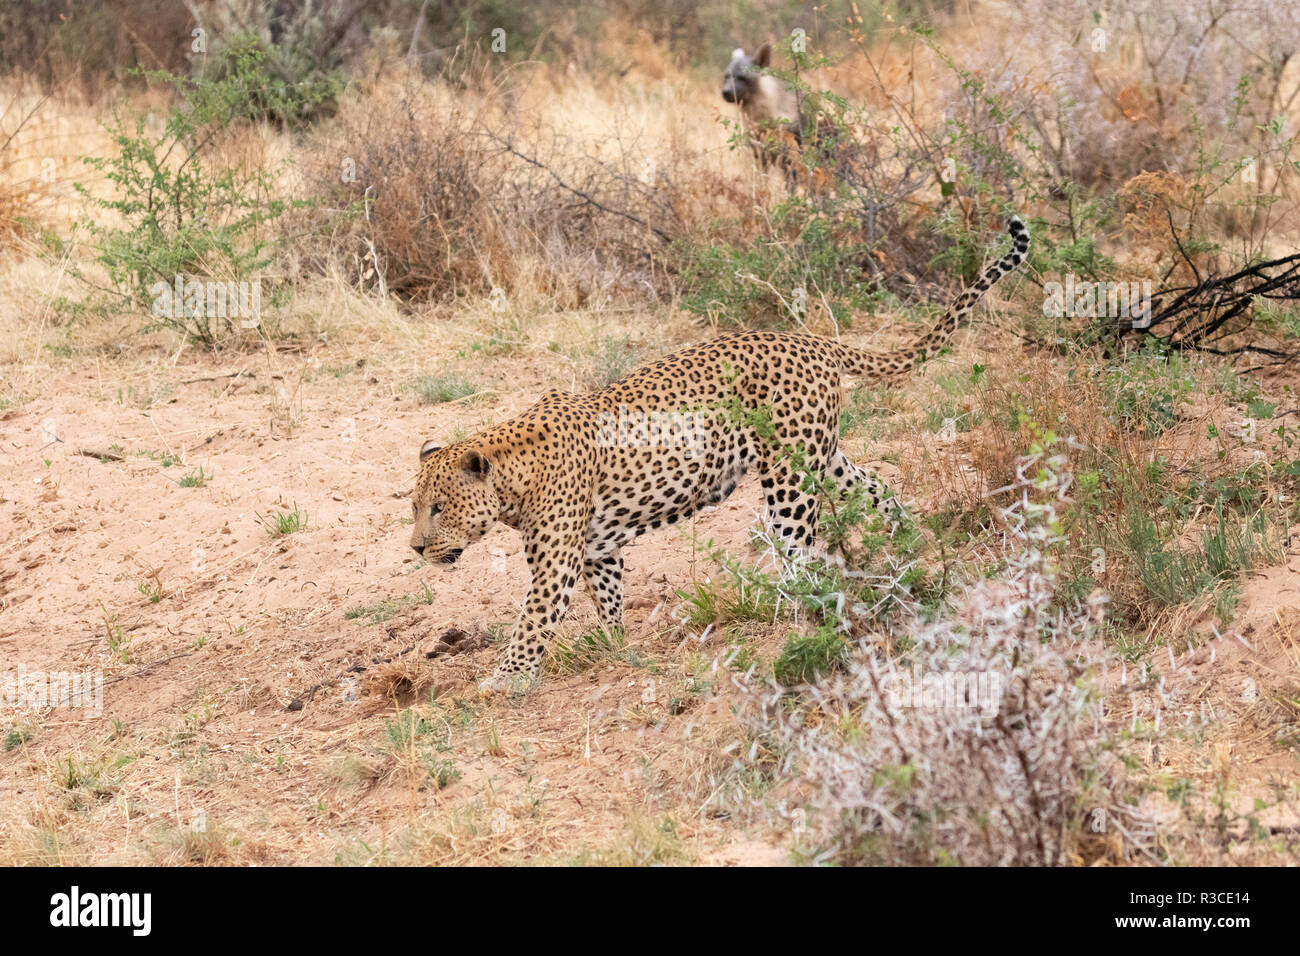 Das Verhalten der Tiere - Leoparden und Hyänen - Erwachsene Leopard Jagd, durch eine Braune Hyäne, der hofft, Spülpumpe, Okonjima Nature Reserve, Namibia Afrika Stockfoto